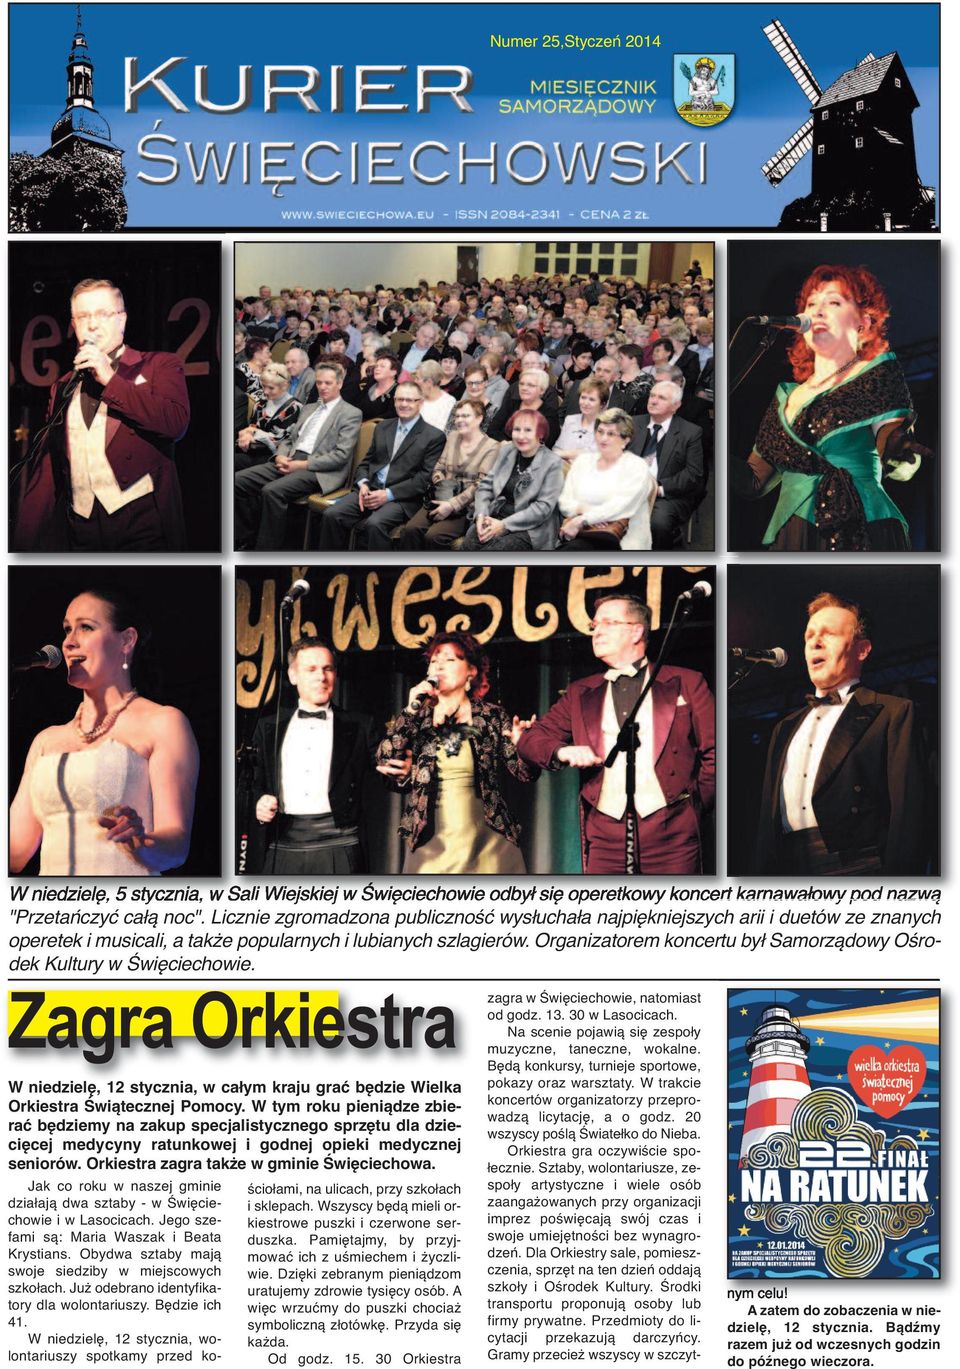 Organizatorem koncertu był Samorządowy Ośrodek Kultury w Święciechowie. Zagra Orkiestra W niedzielę, 12 stycznia, w całym kraju grać będzie Wielka Orkiestra Świątecznej Pomocy.